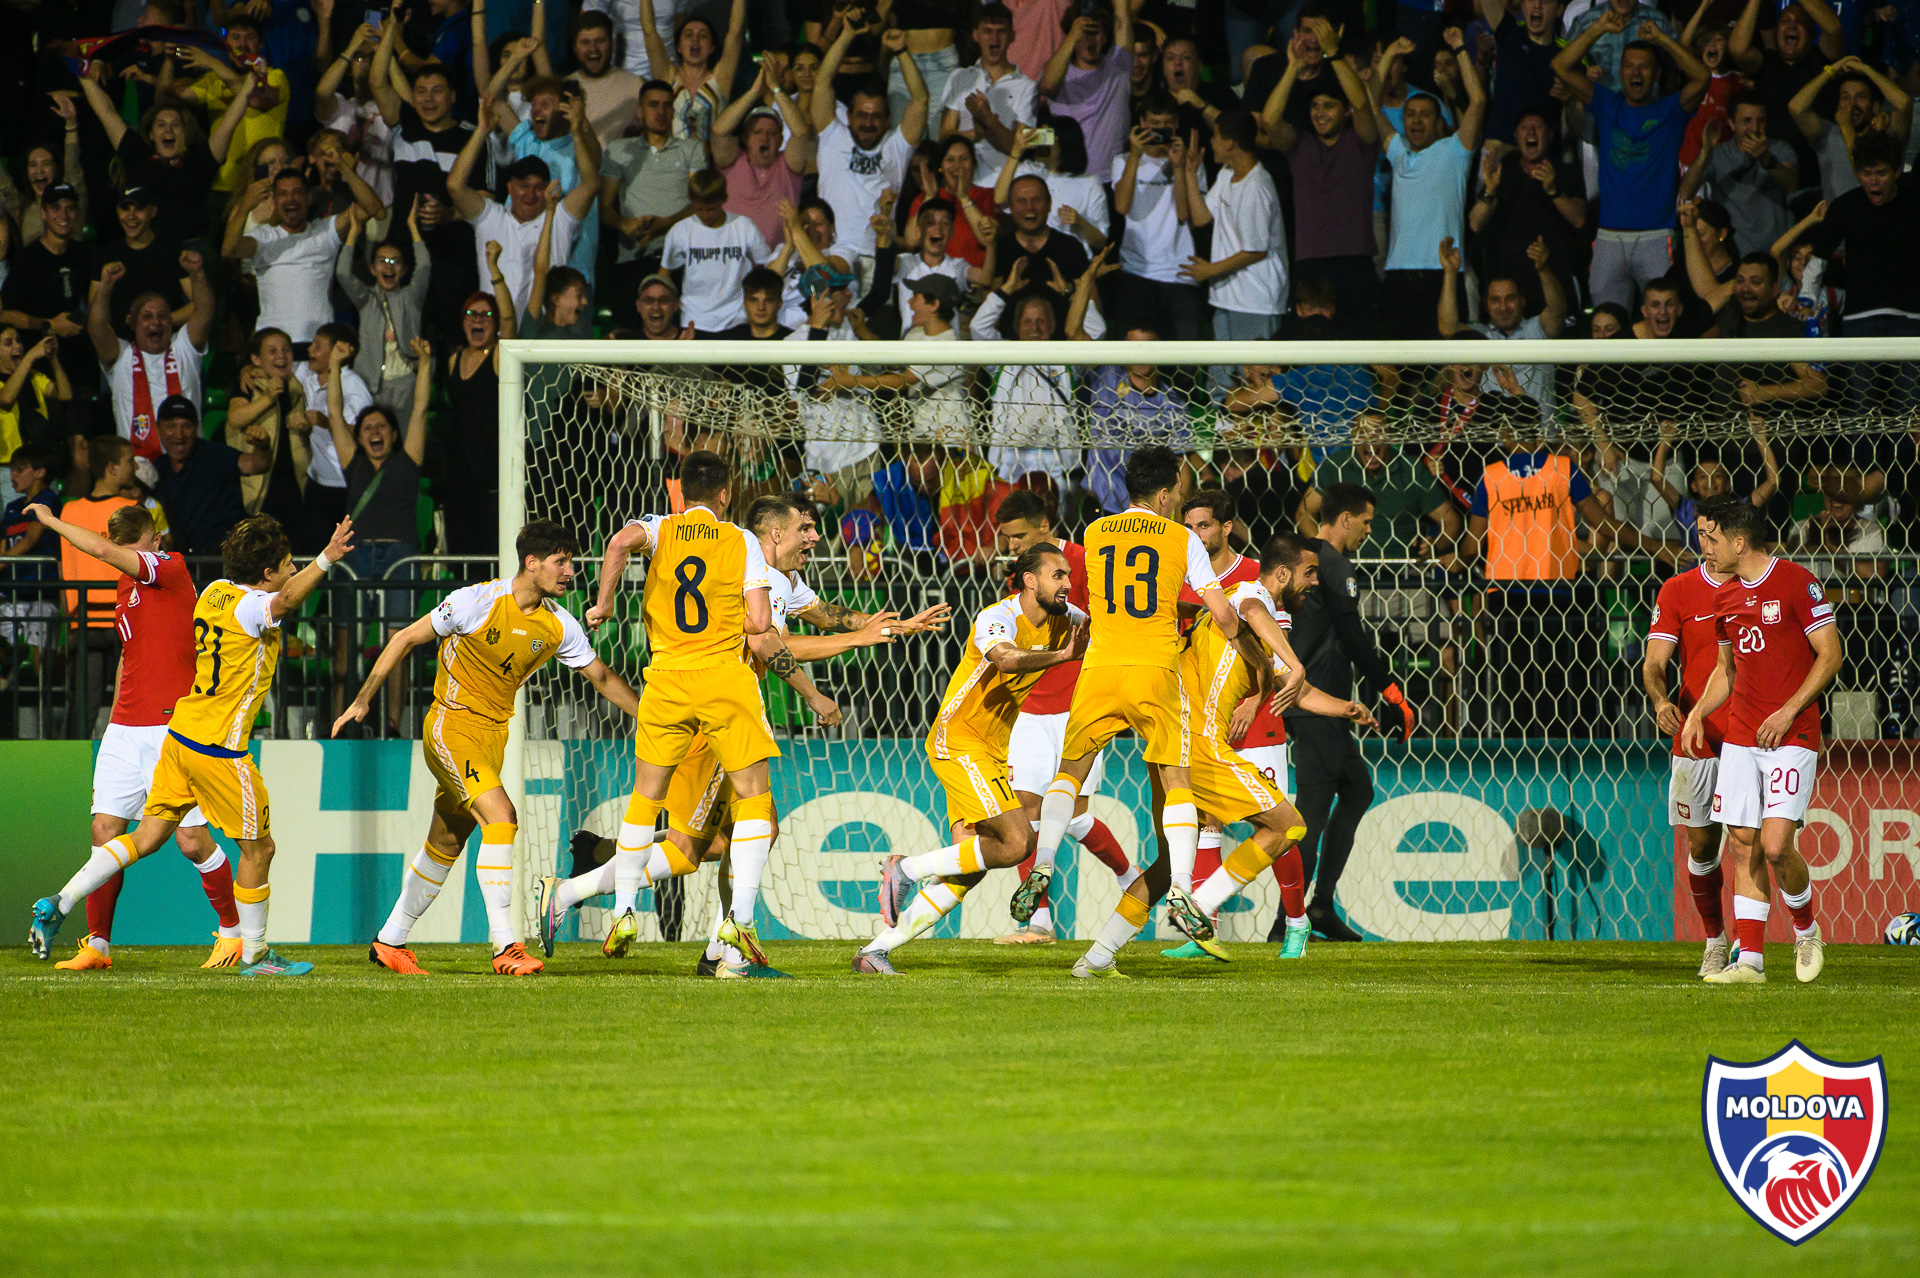 (FOTO) Victorie istorică. Naționala Moldovei la fotbal a învins Polonia cu scor 3-2